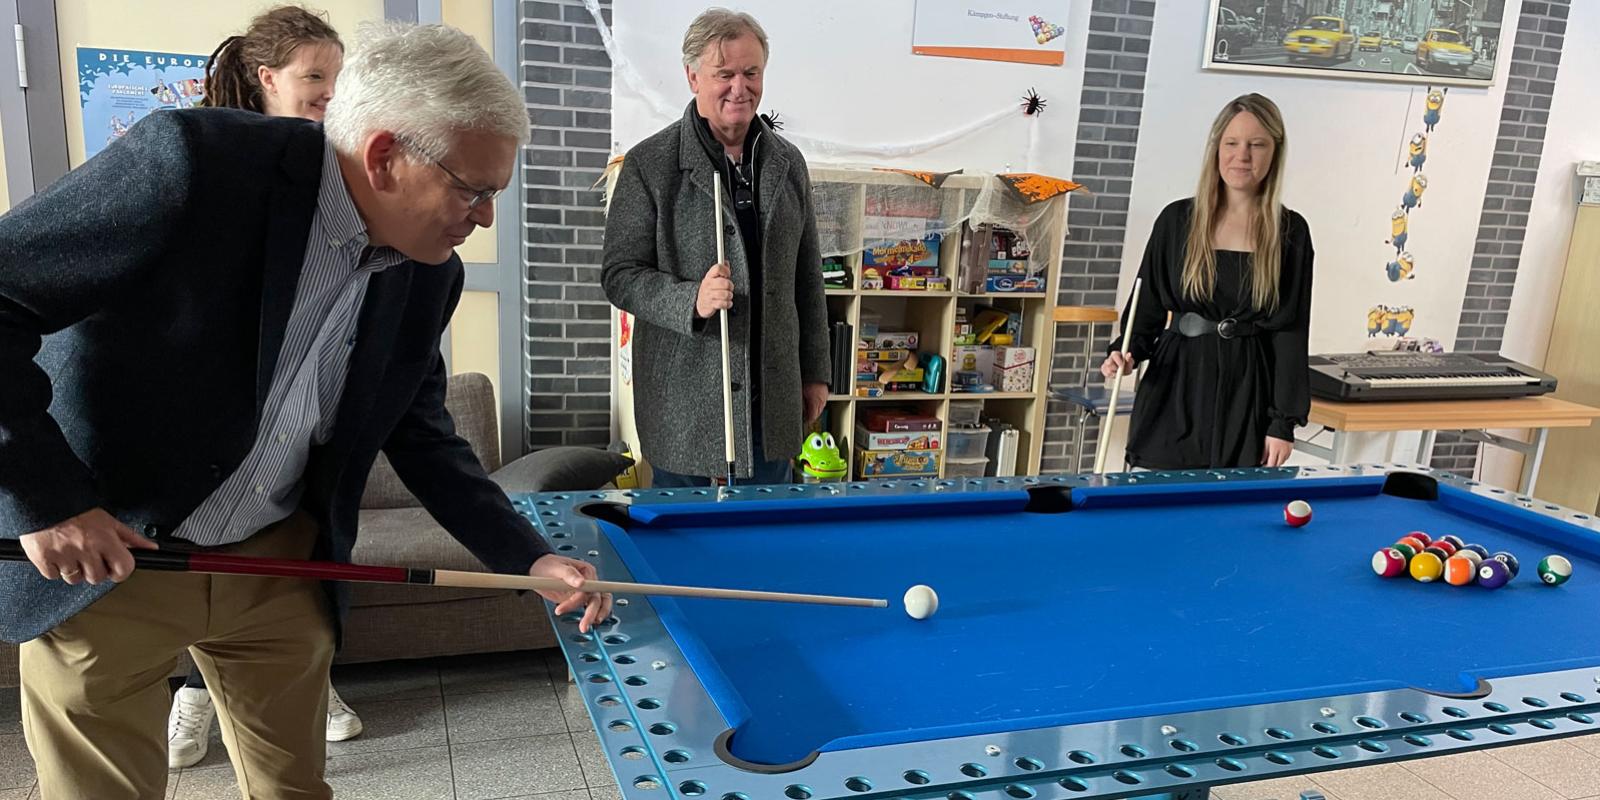 Der neue Billiardtisch wurde direkt ausprobiert. (v.l.: Prof. Dr. Hans Josef Deutsch, Heike Platte, Manfred Roggendorf, Katharina Ritter)